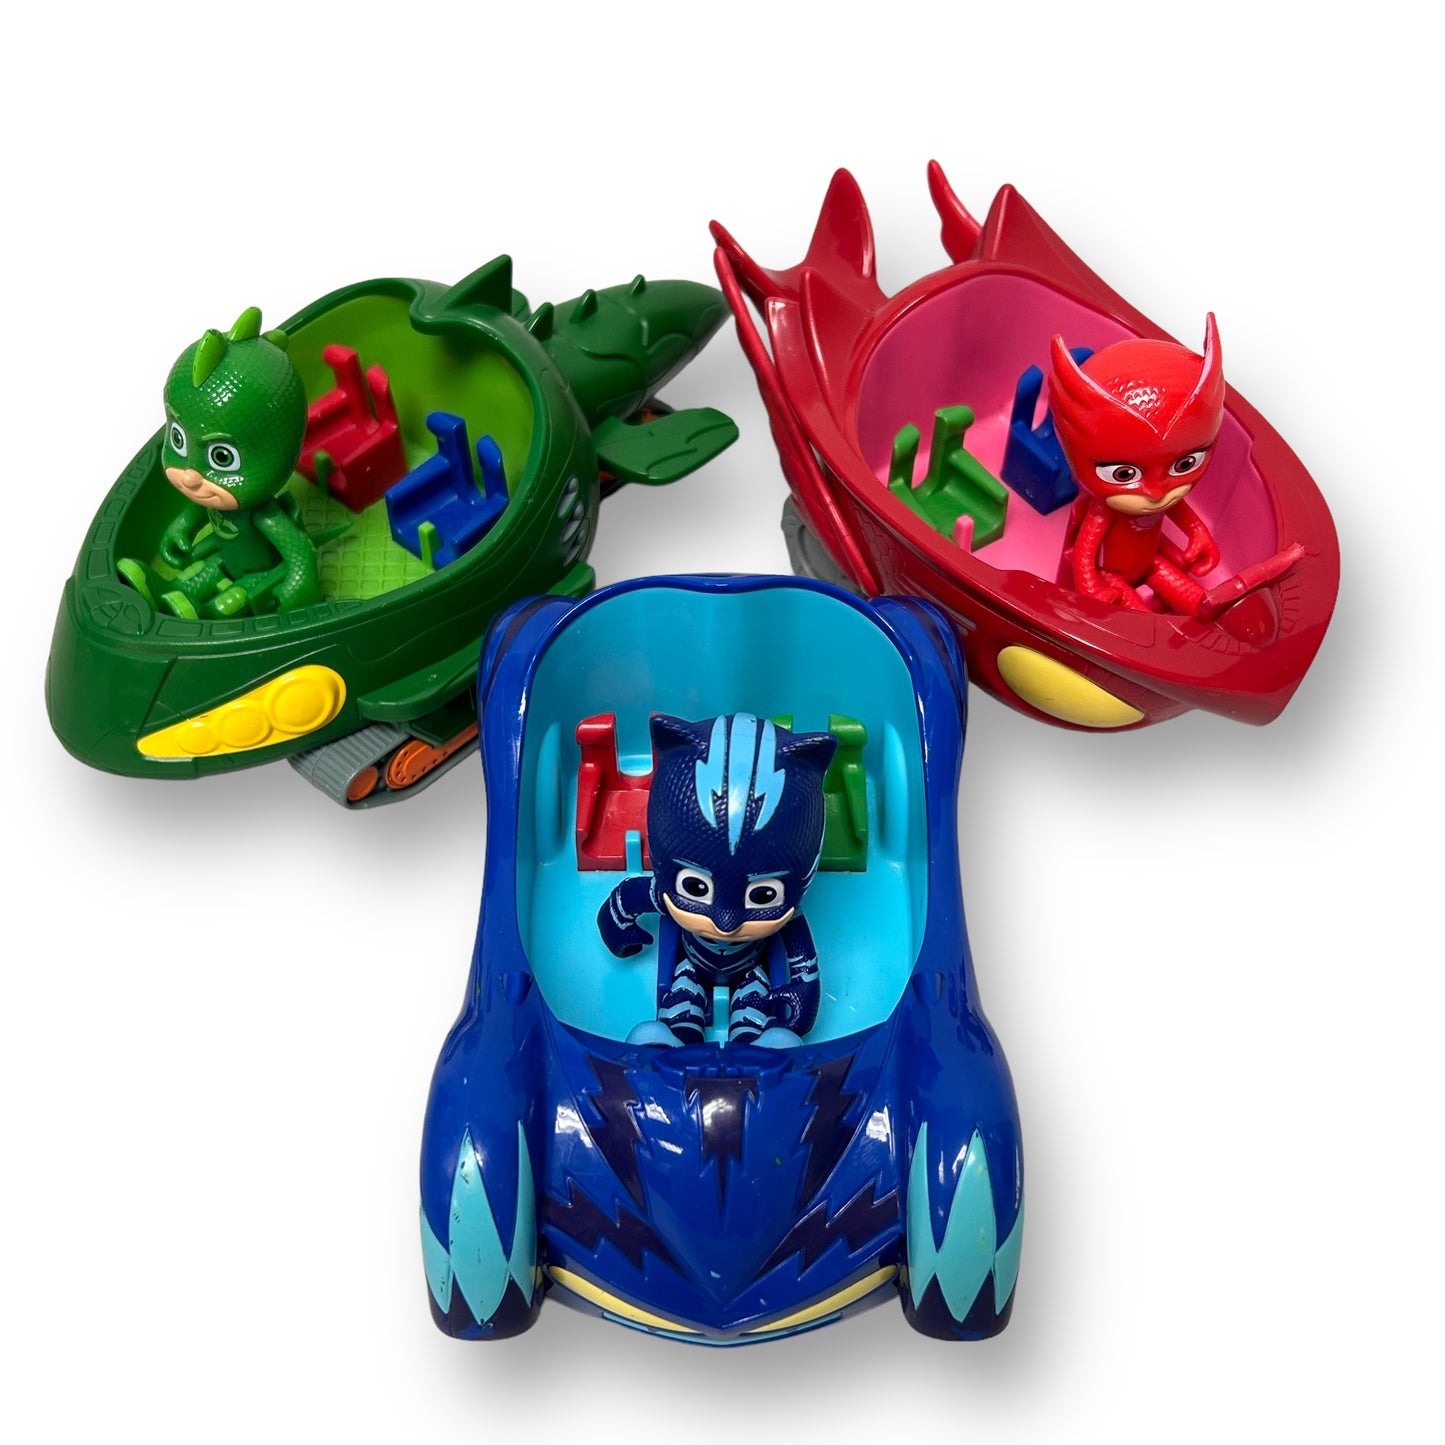 PJ Masks Characters & Vehicles Triple Mega Bundle Collection